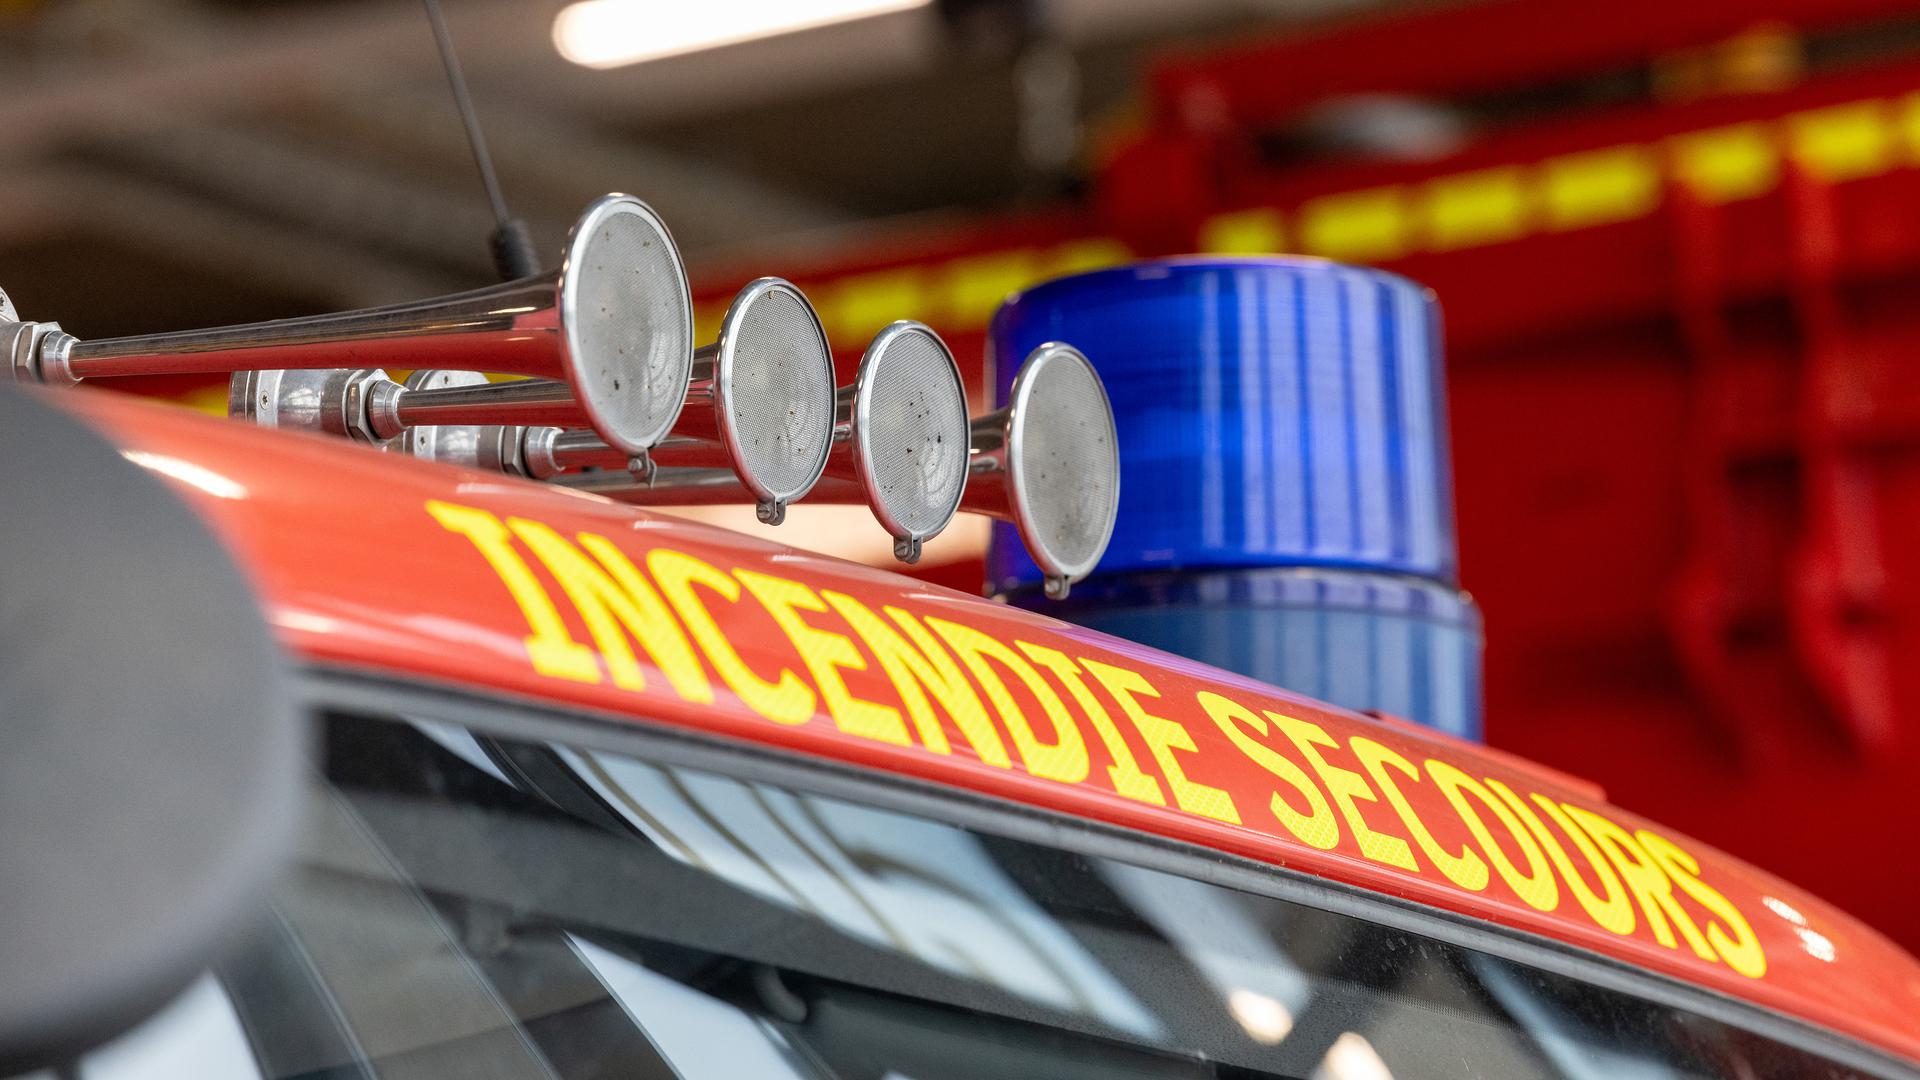 Rettungswesen , CGDIS , CNIS , Feuerwehrauto , Feuerwehr . Erste Hilfe , Sauvetage , Pompiers , Unfall , Foto:Guy Jallay/Luxemburger Wort